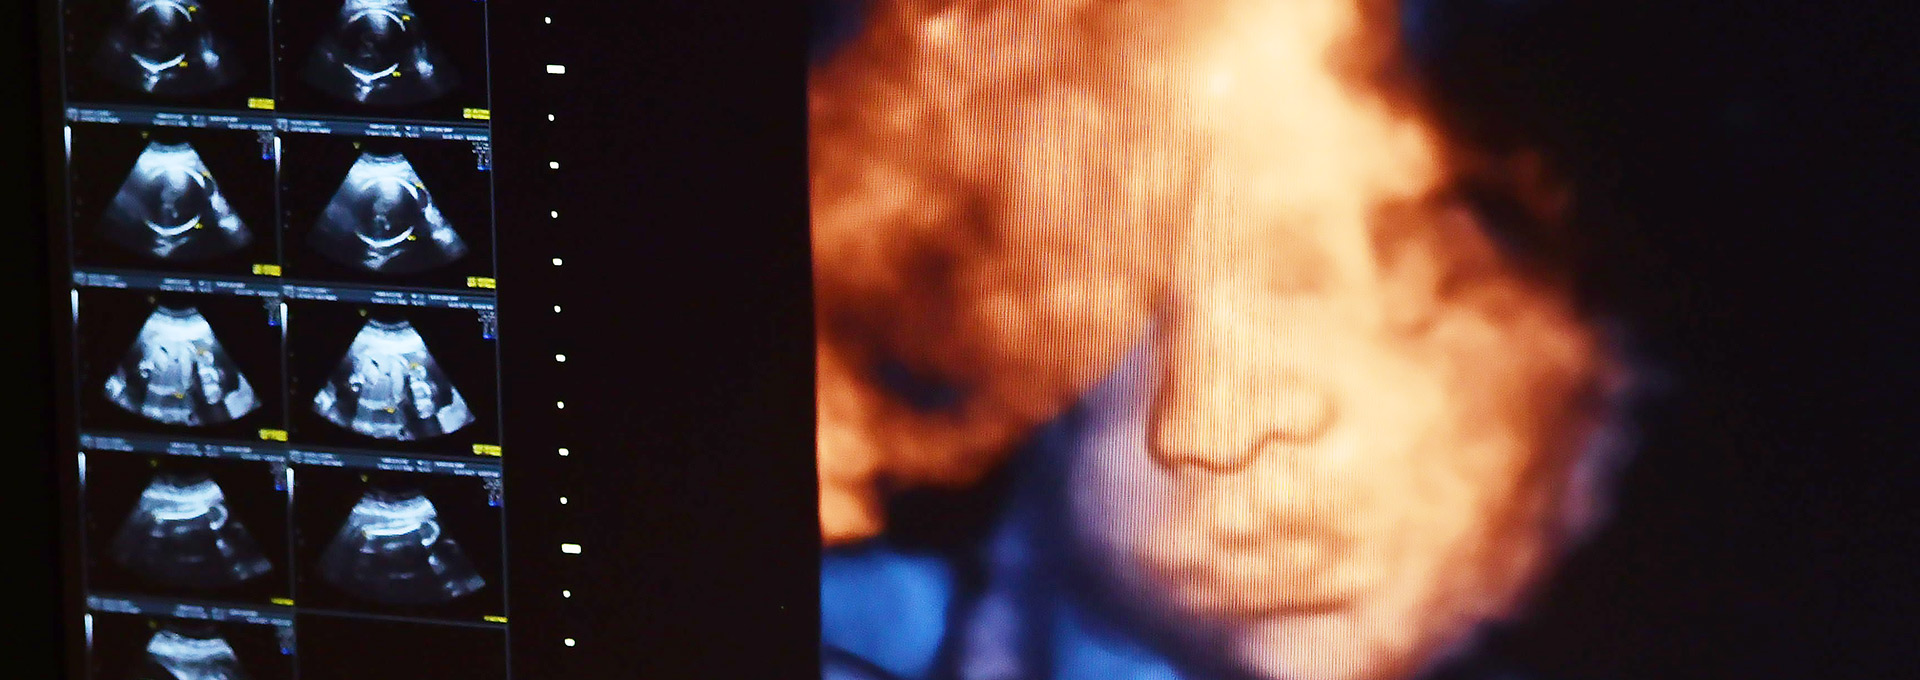 Imagem de ultrassonografia tridimensional, apresentando, em cores vivas, o rosto de um feto ainda no útero materno